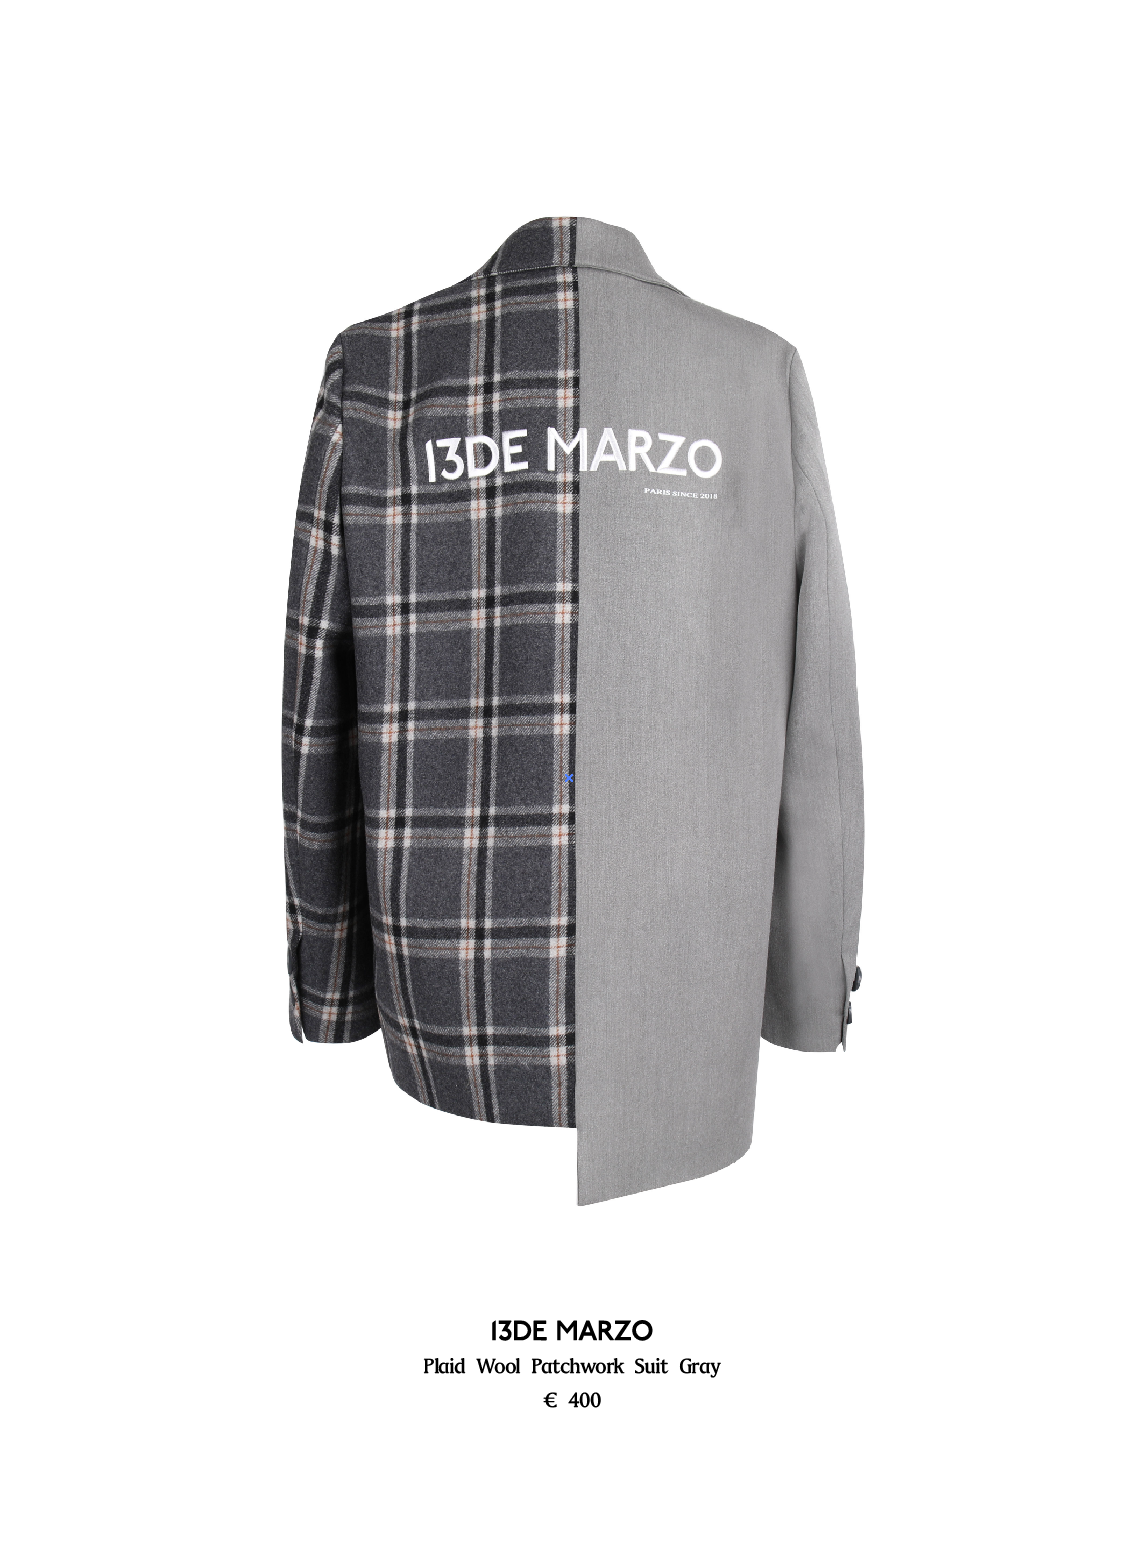 13DE MARZO Plaid Wool Patchwork Suit - 13DeMarzo